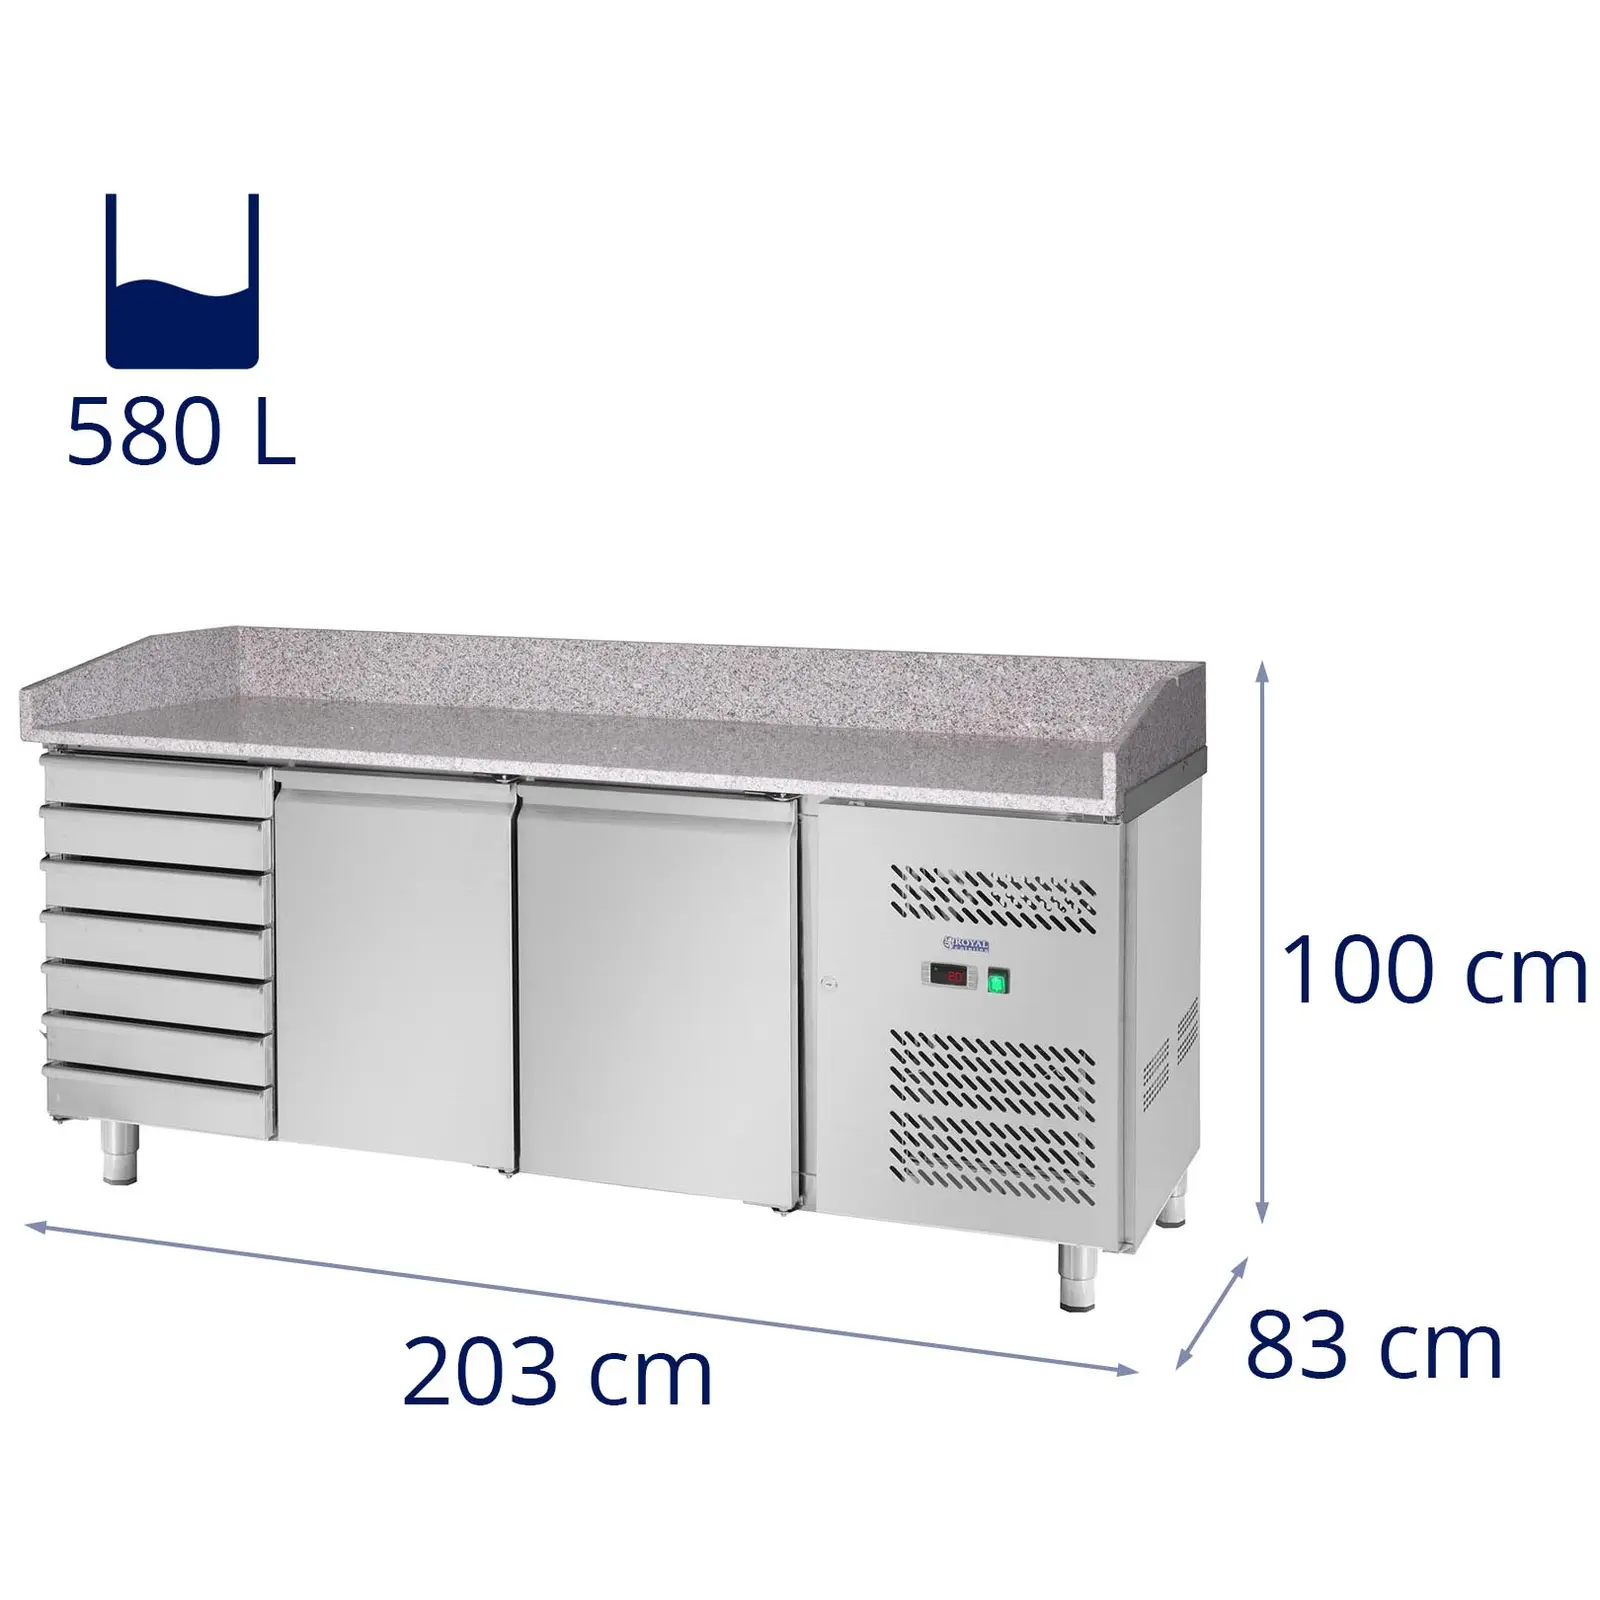 Mesa refrigerada - 580 L - encimera de granito - 2 puertas